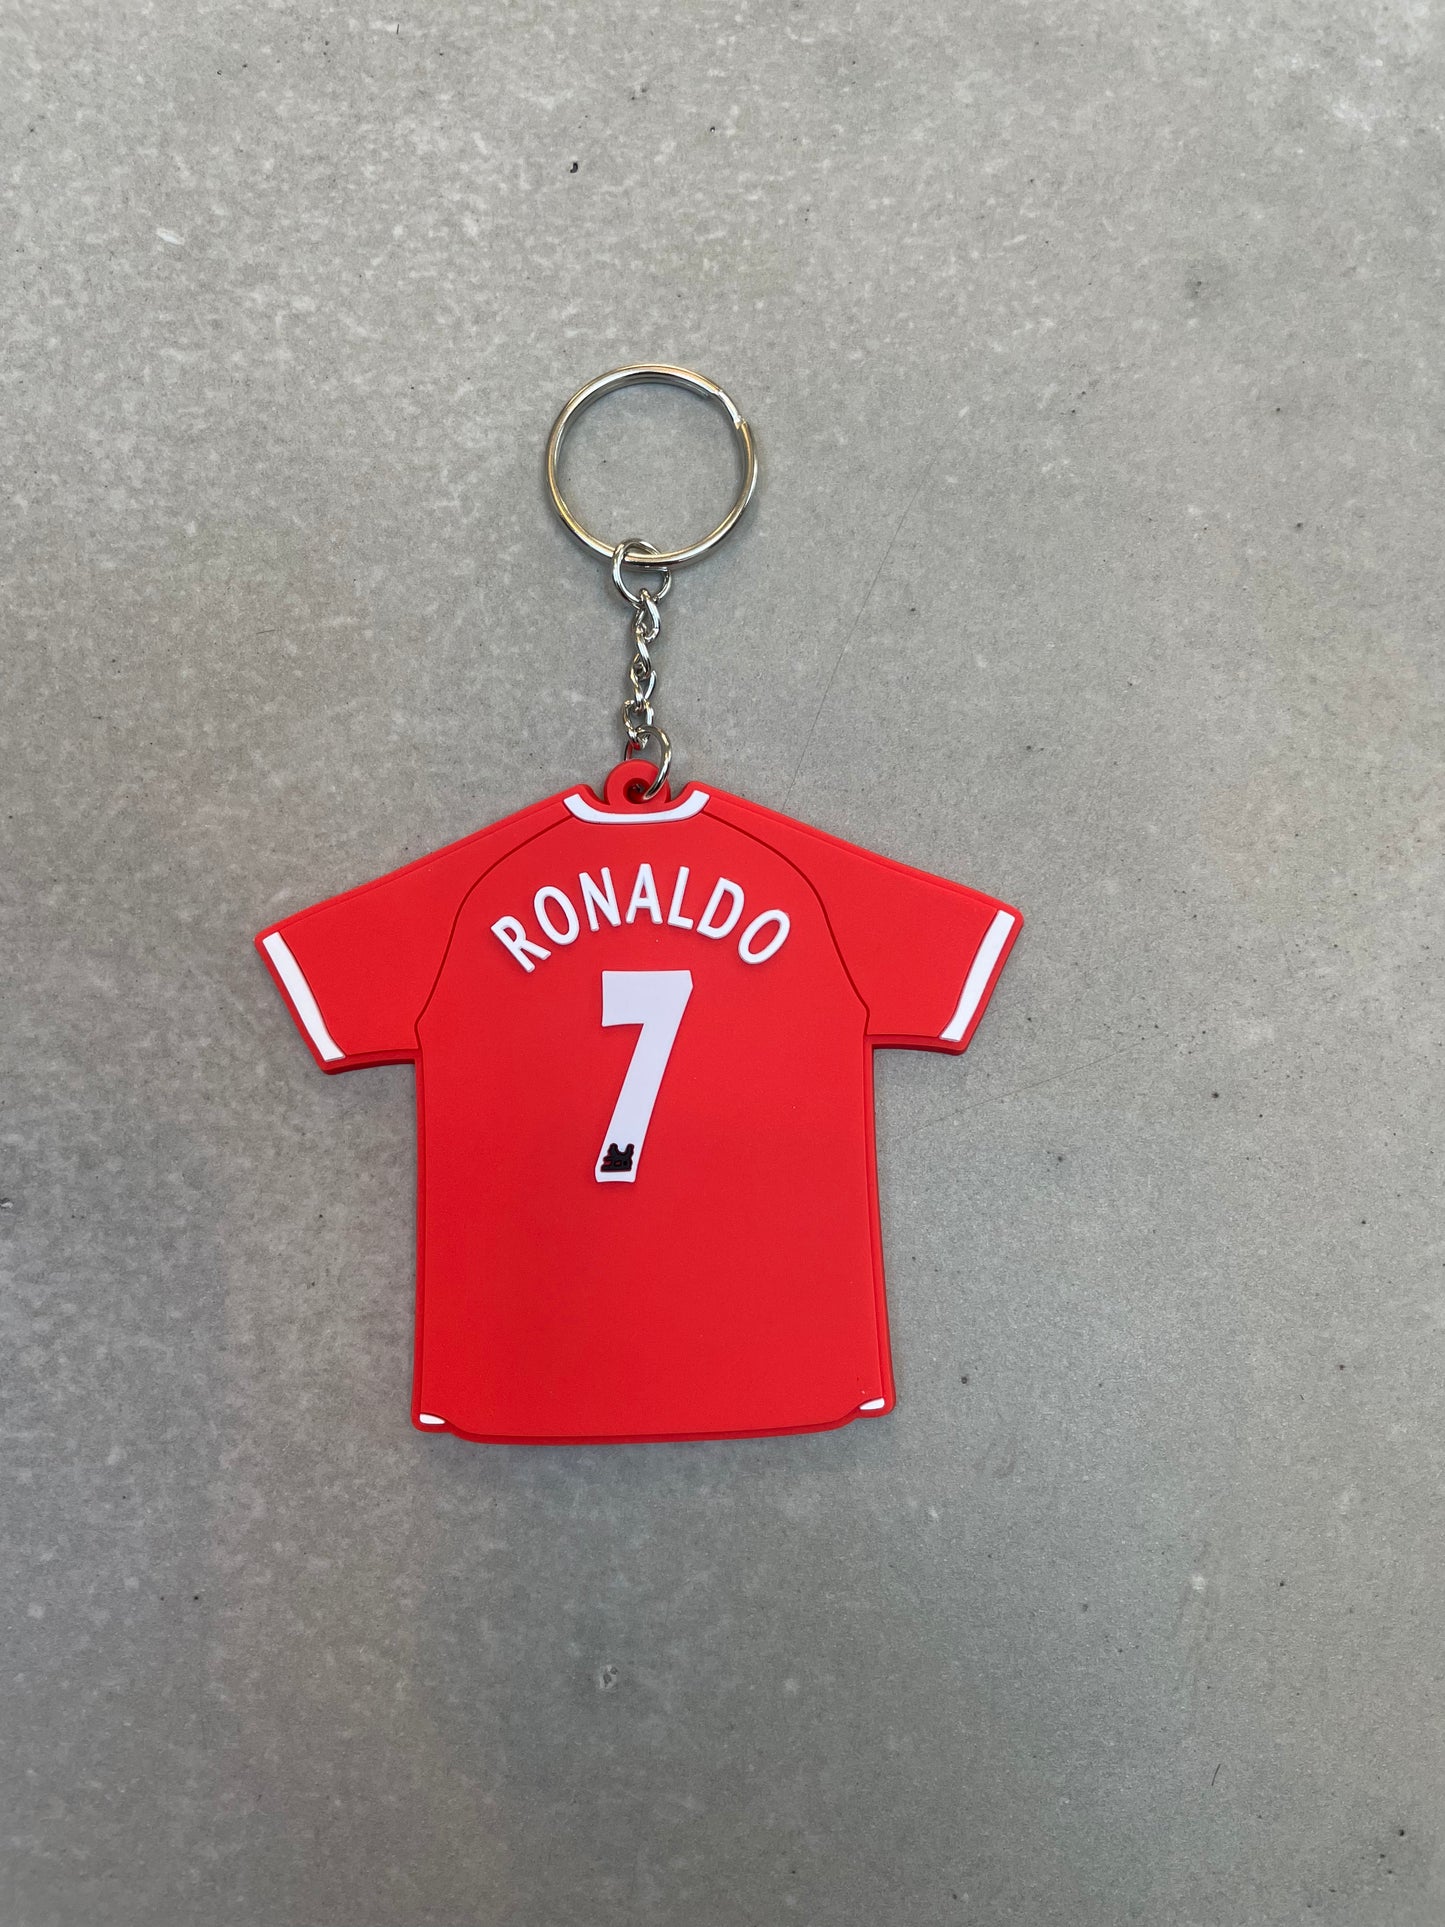 Ronaldo key ring & bag tag